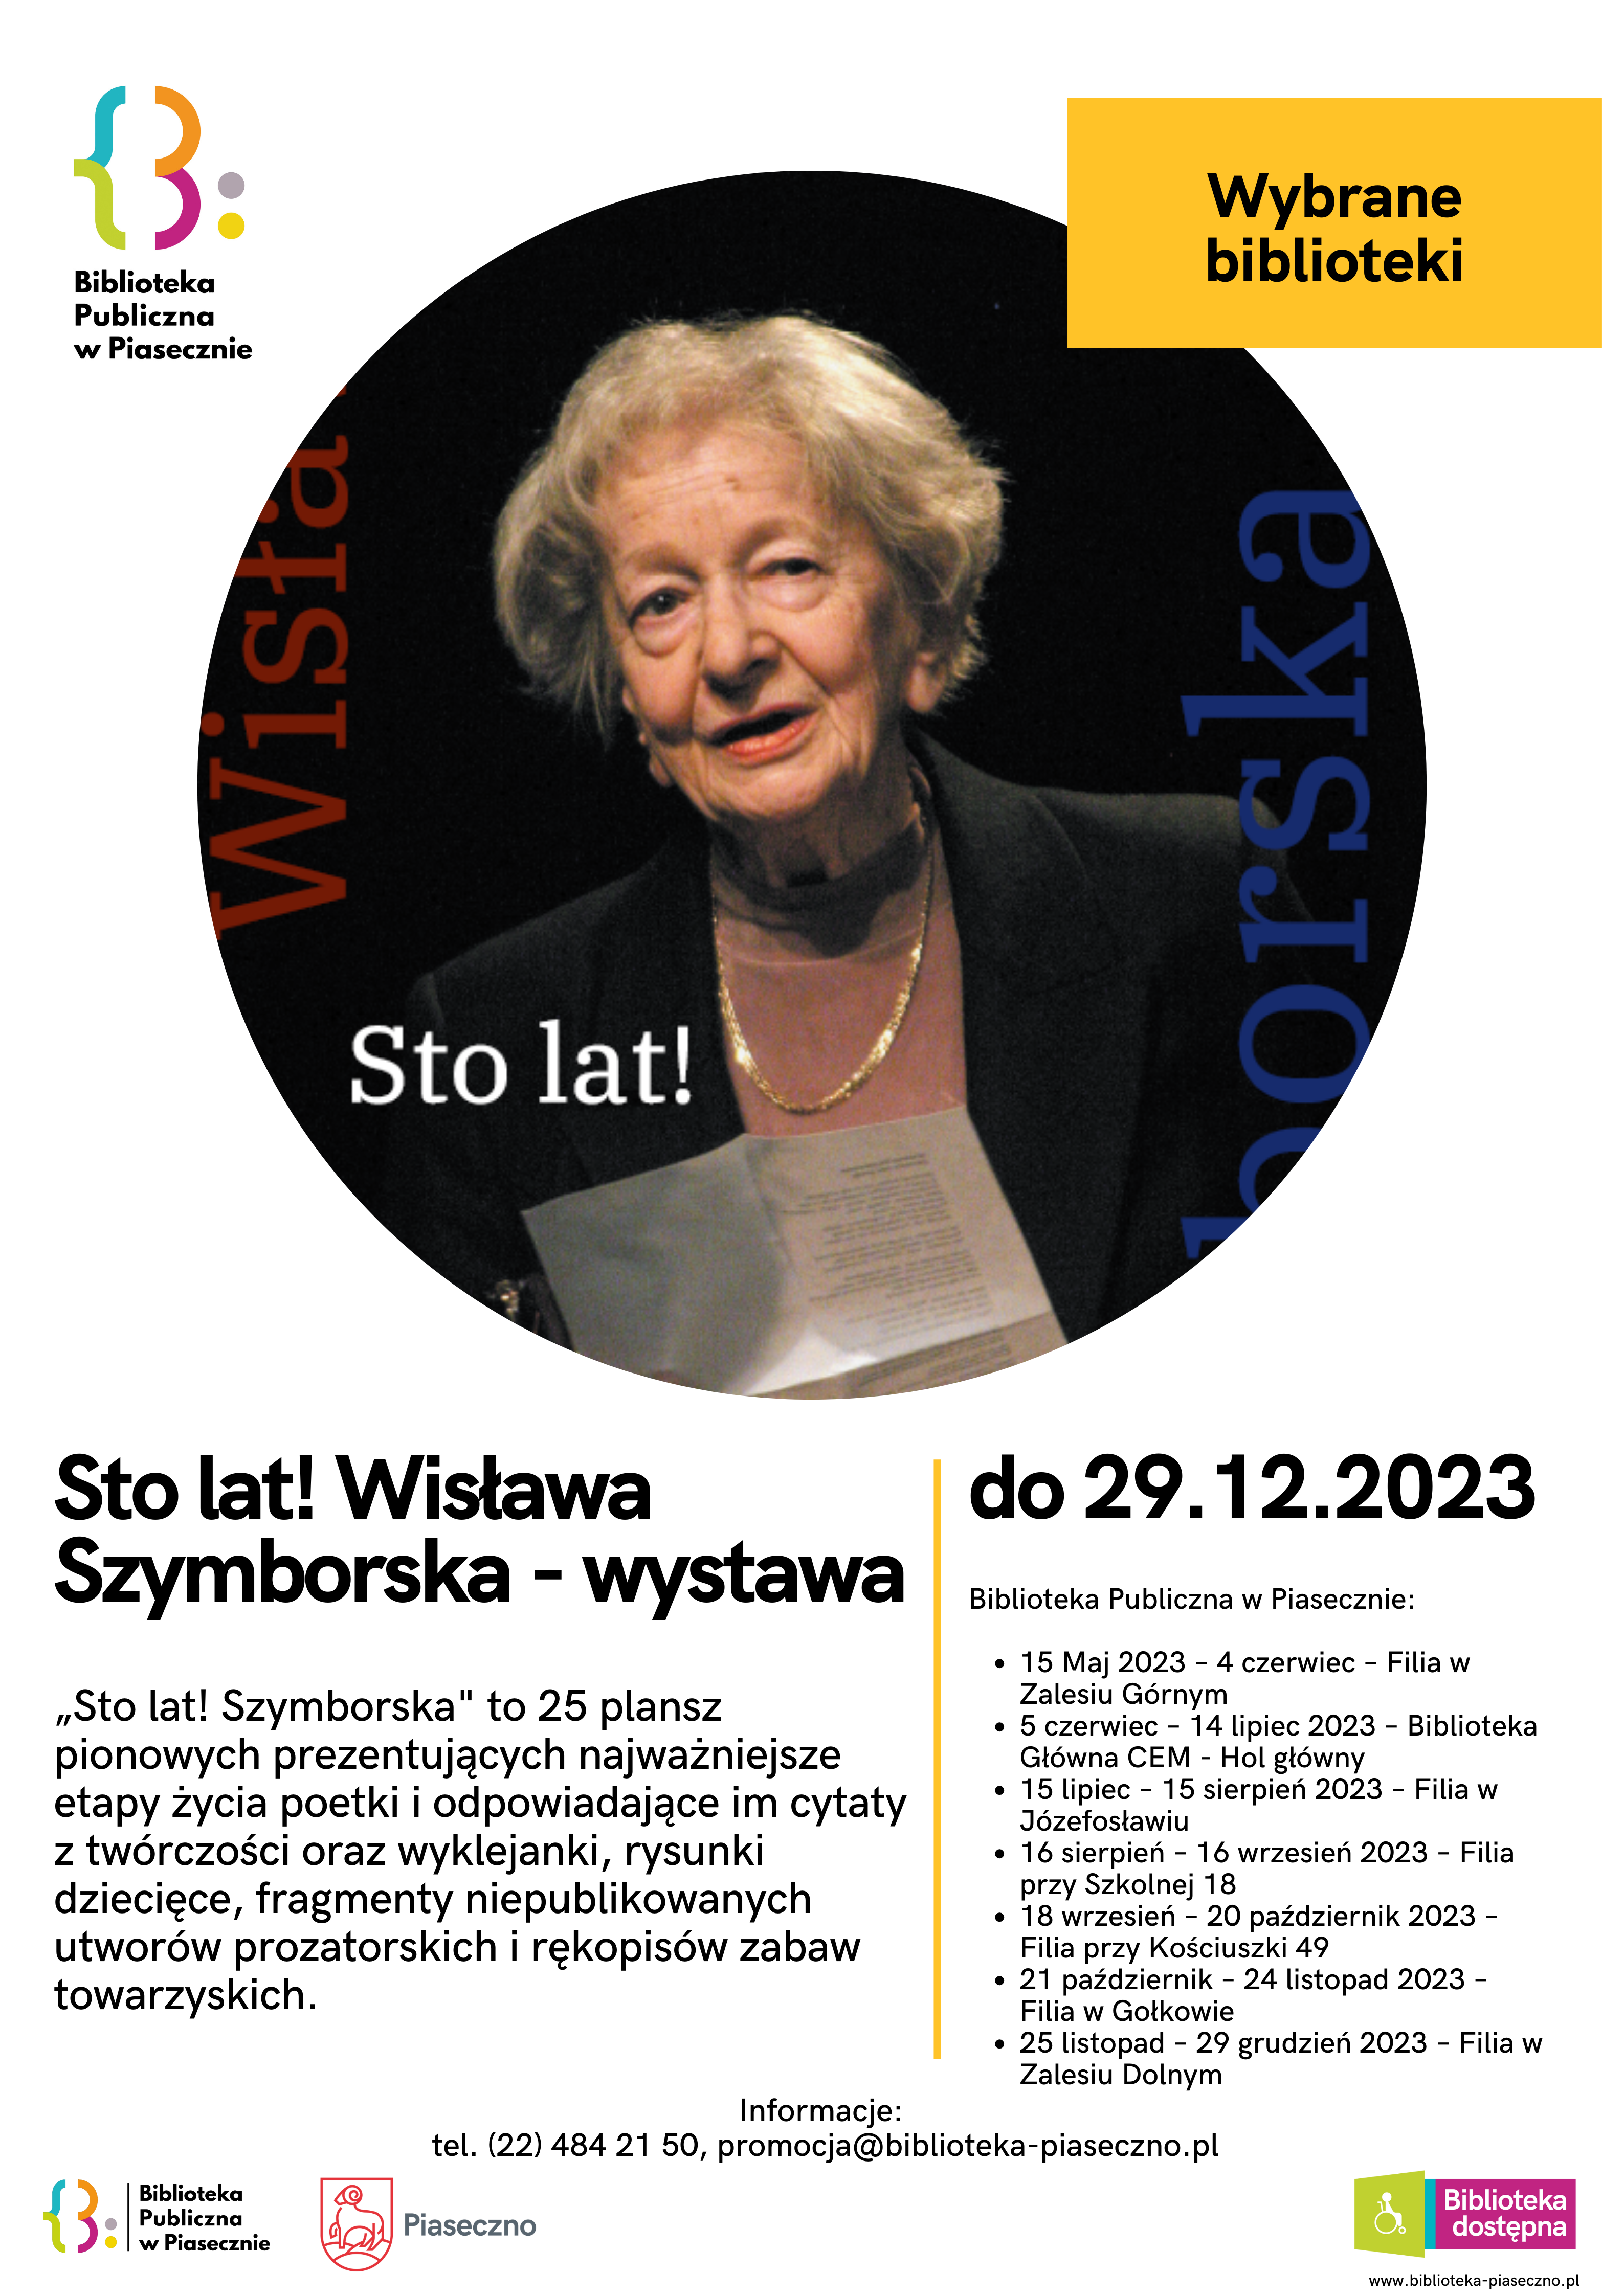 Sto lat. Wisława Szymborska - plakat informujący o wystawie